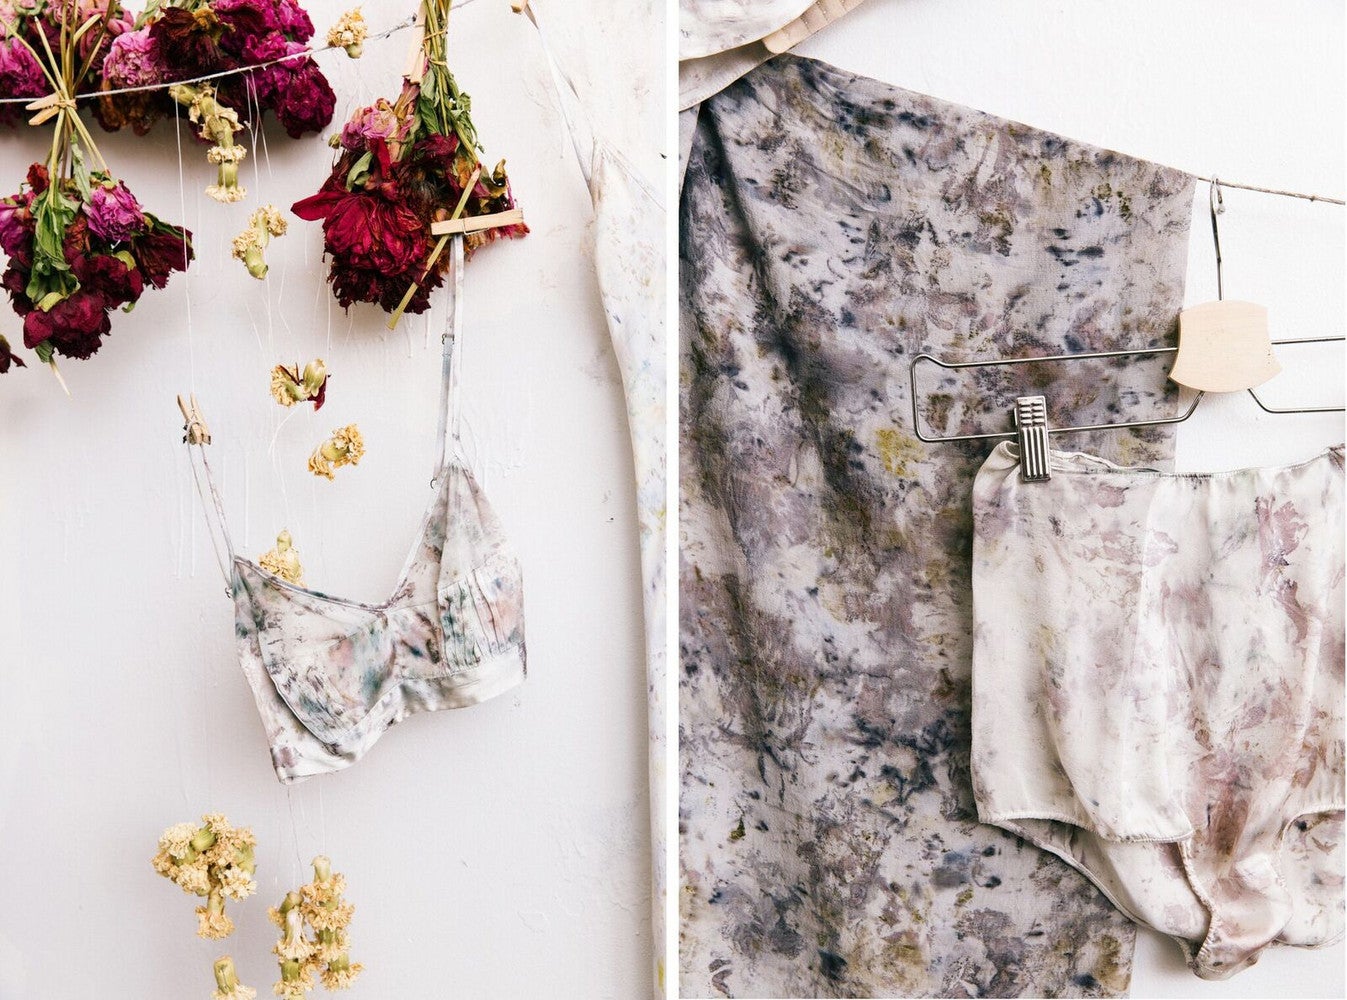 See this Textile Designer’s Genius Idea for Repurposing Wedding Bouquets